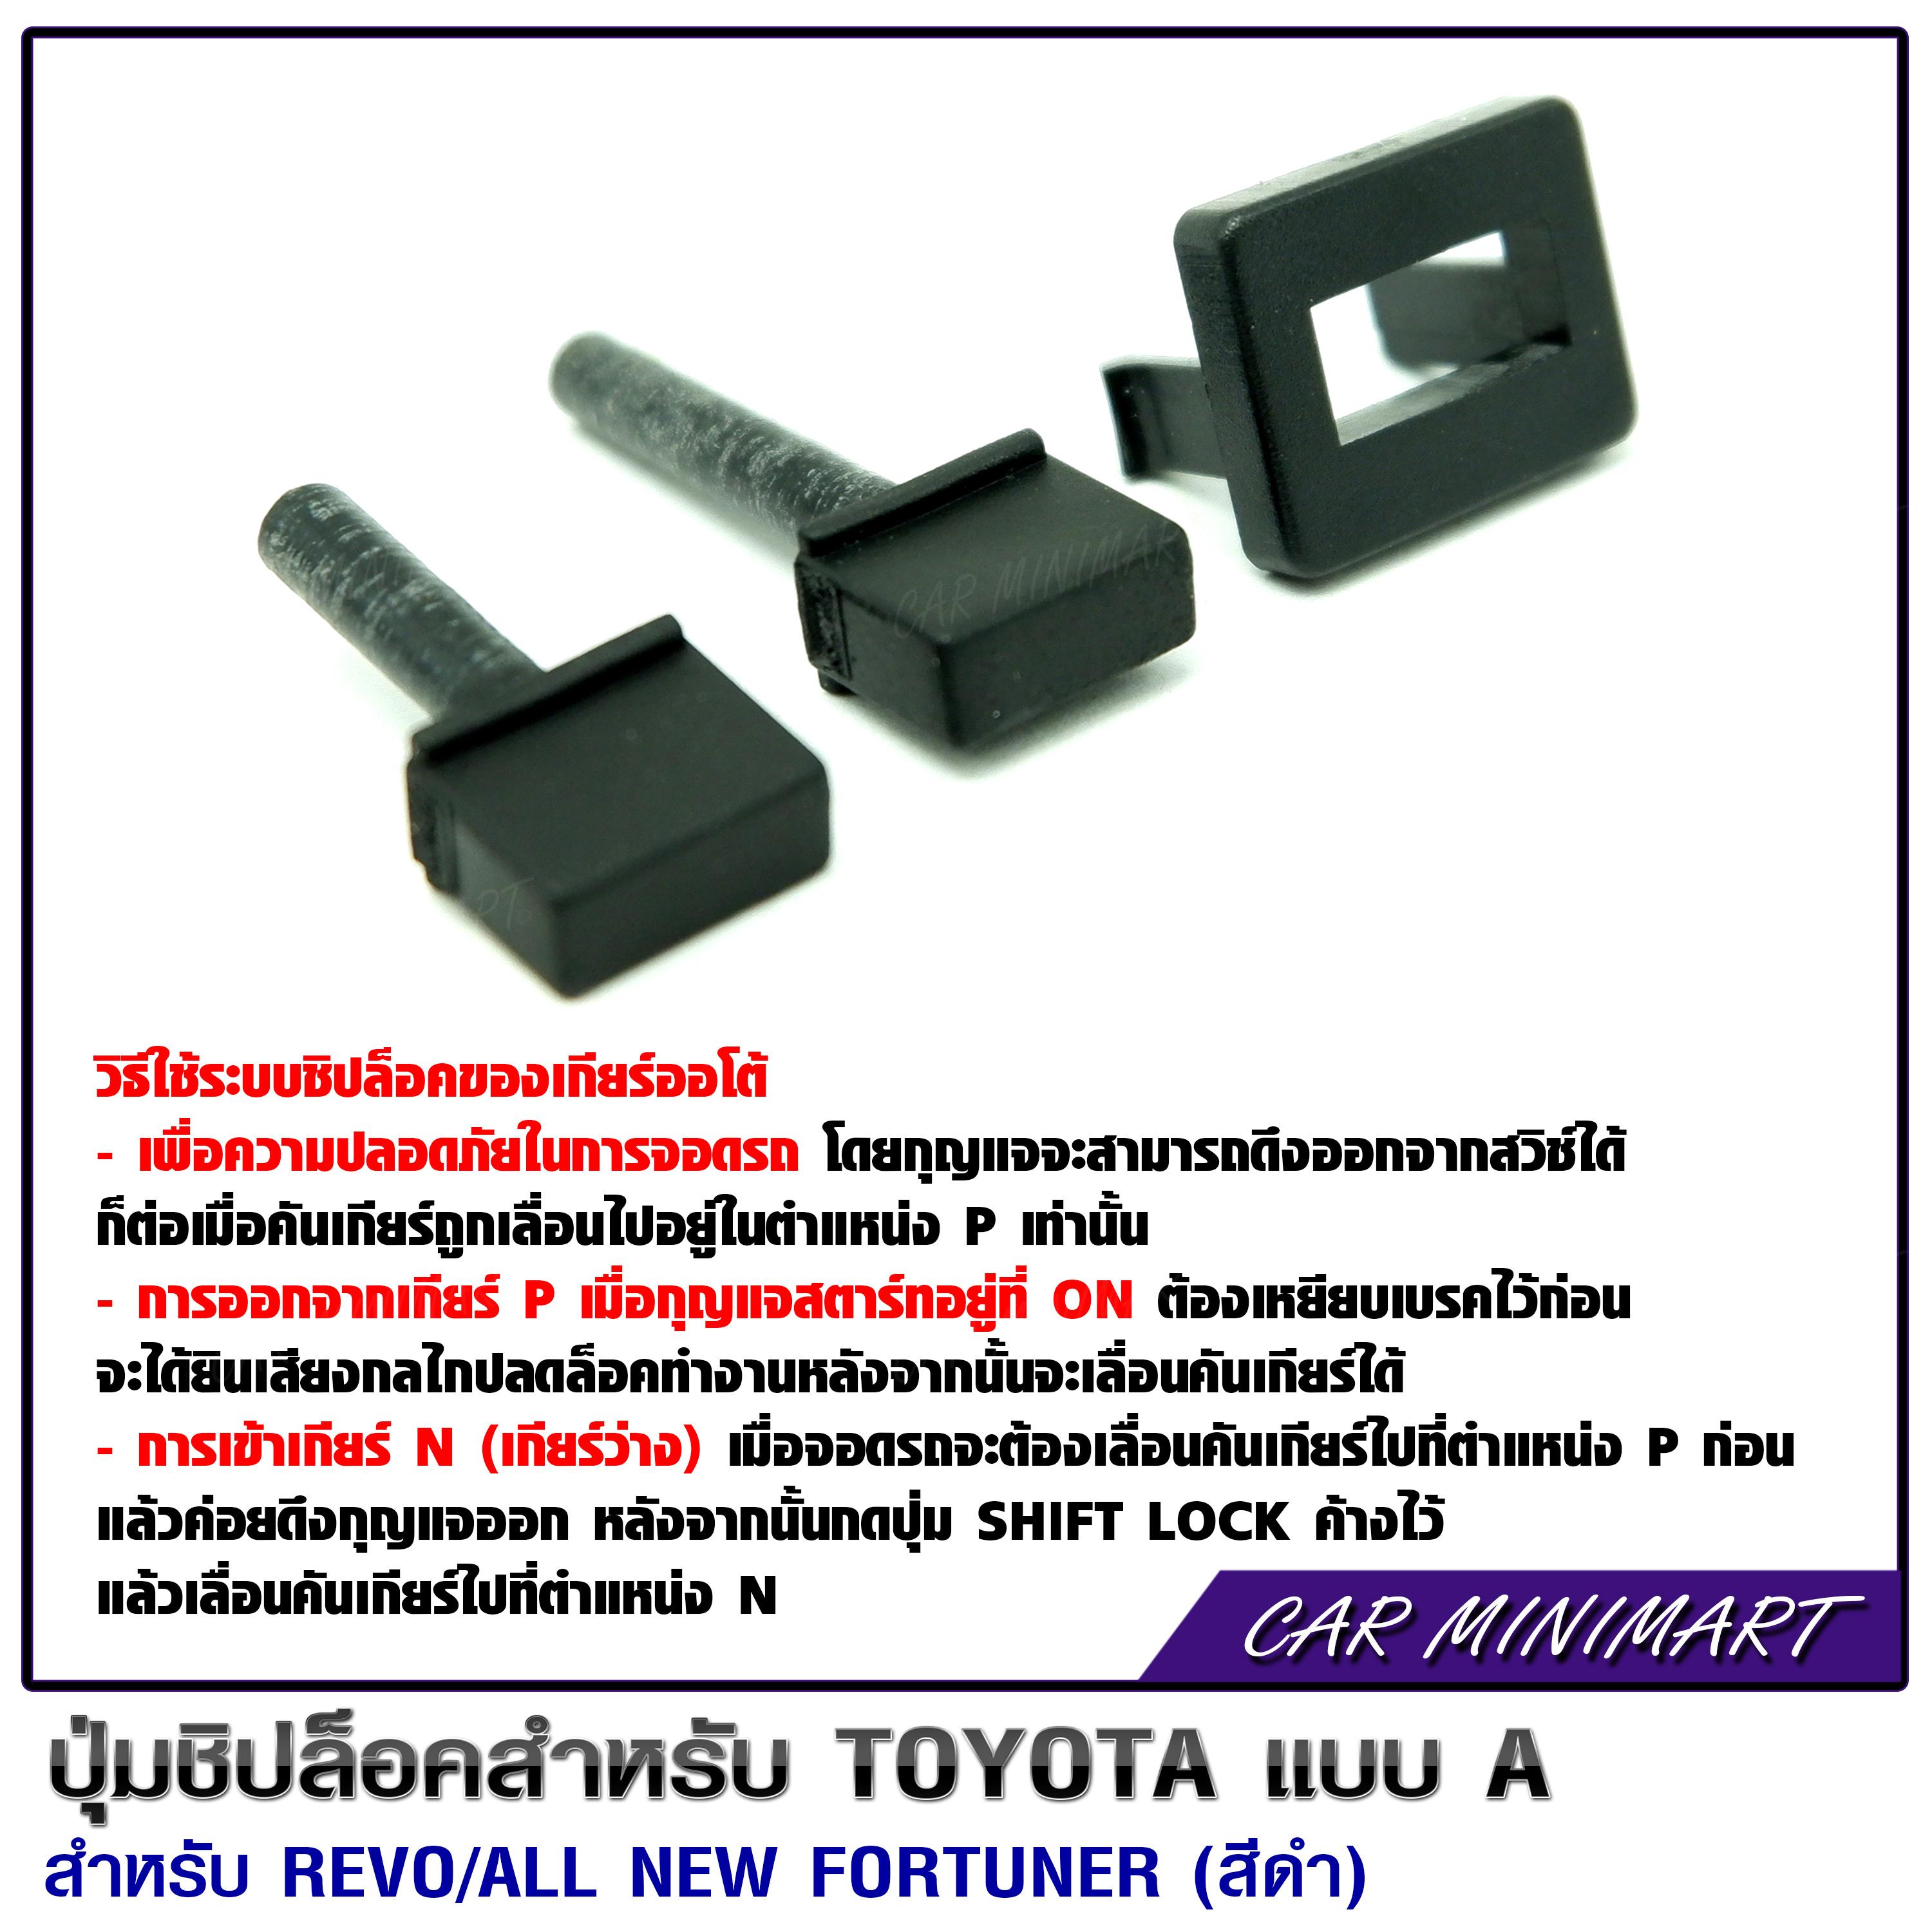 ปุ่มชิปล๊อคสำหรับ Toyota แบบ A สำหรับ Revo / All New Fortuner (สีดำ)